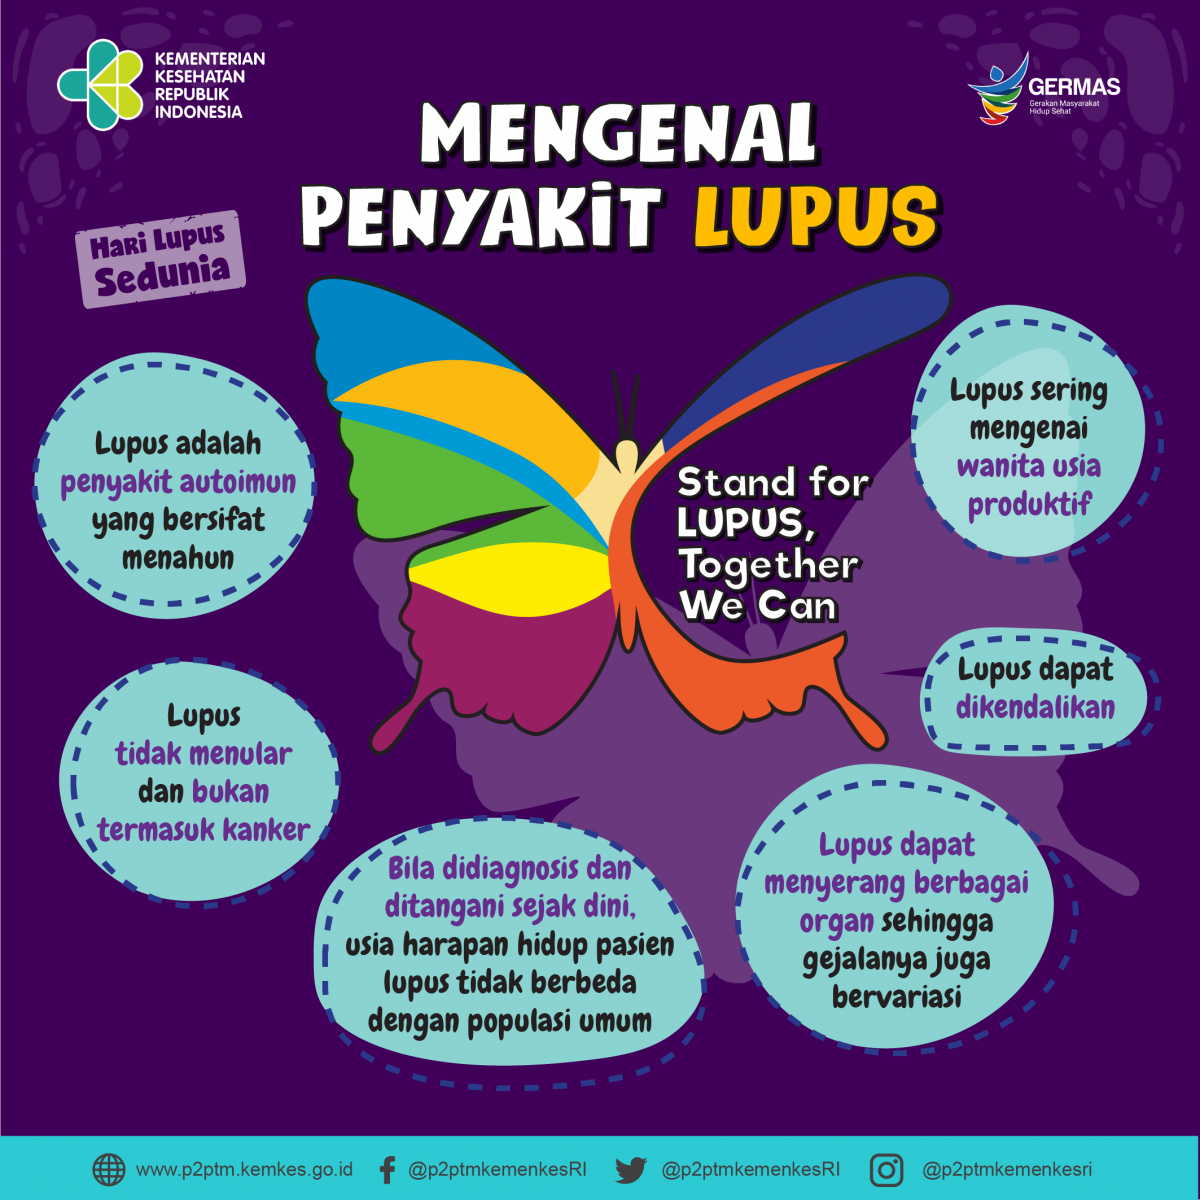 Yuk, Mengenal Penyakit Lupus